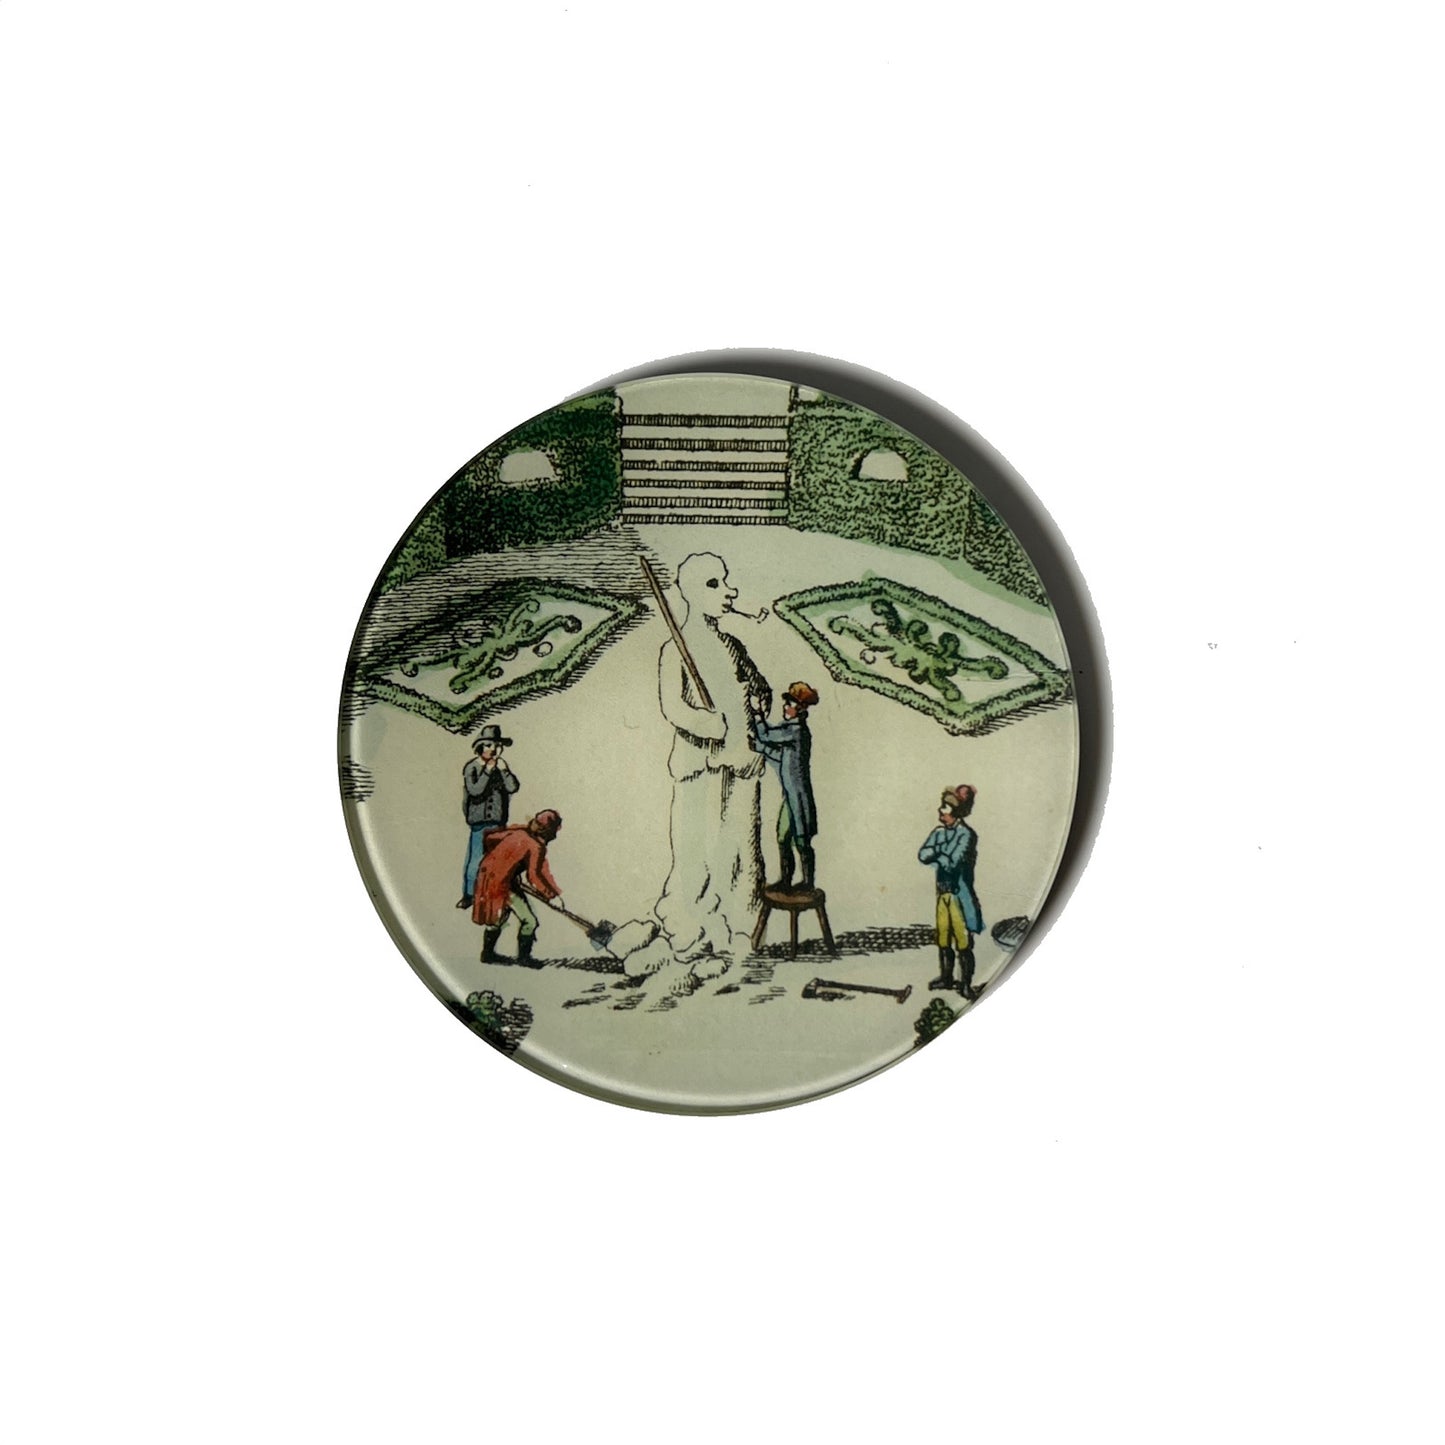 【JOHN DERIAN】デコパージュプレート Winter Garden Snowman 1780